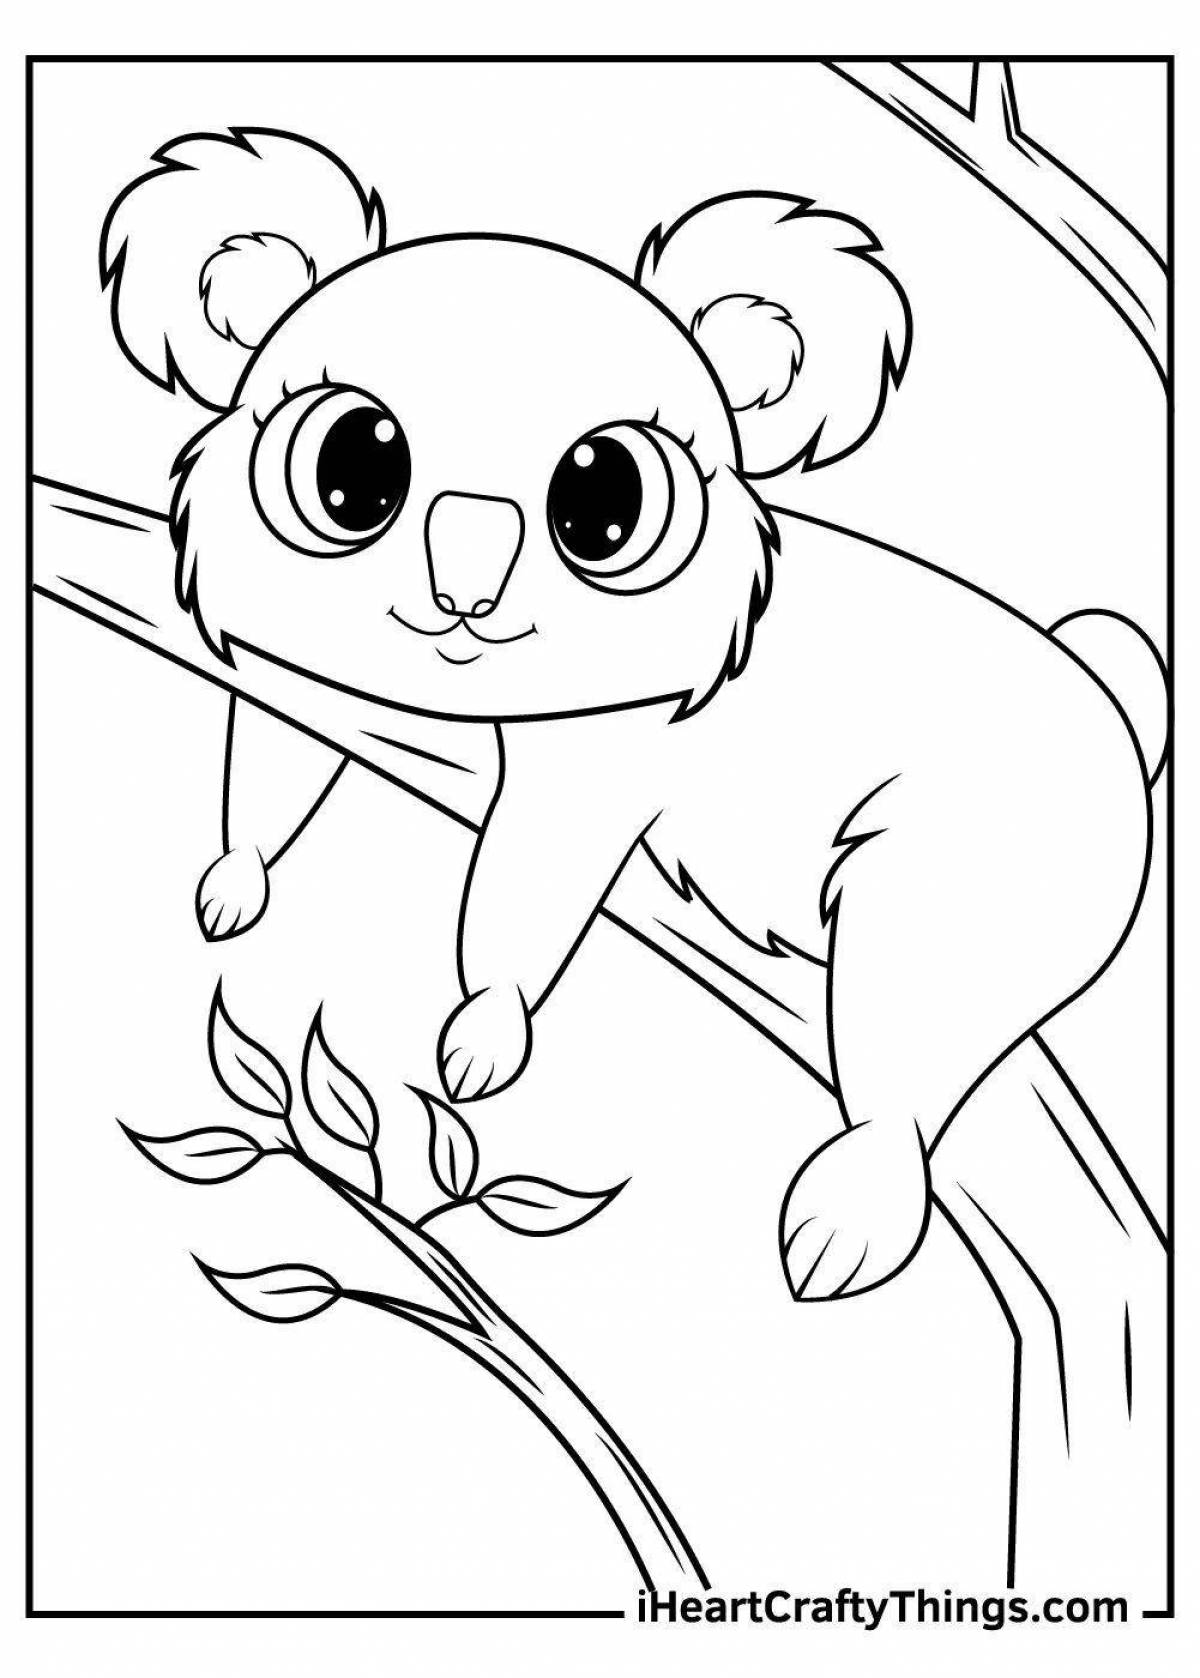 Восхитительная раскраска коала для детей